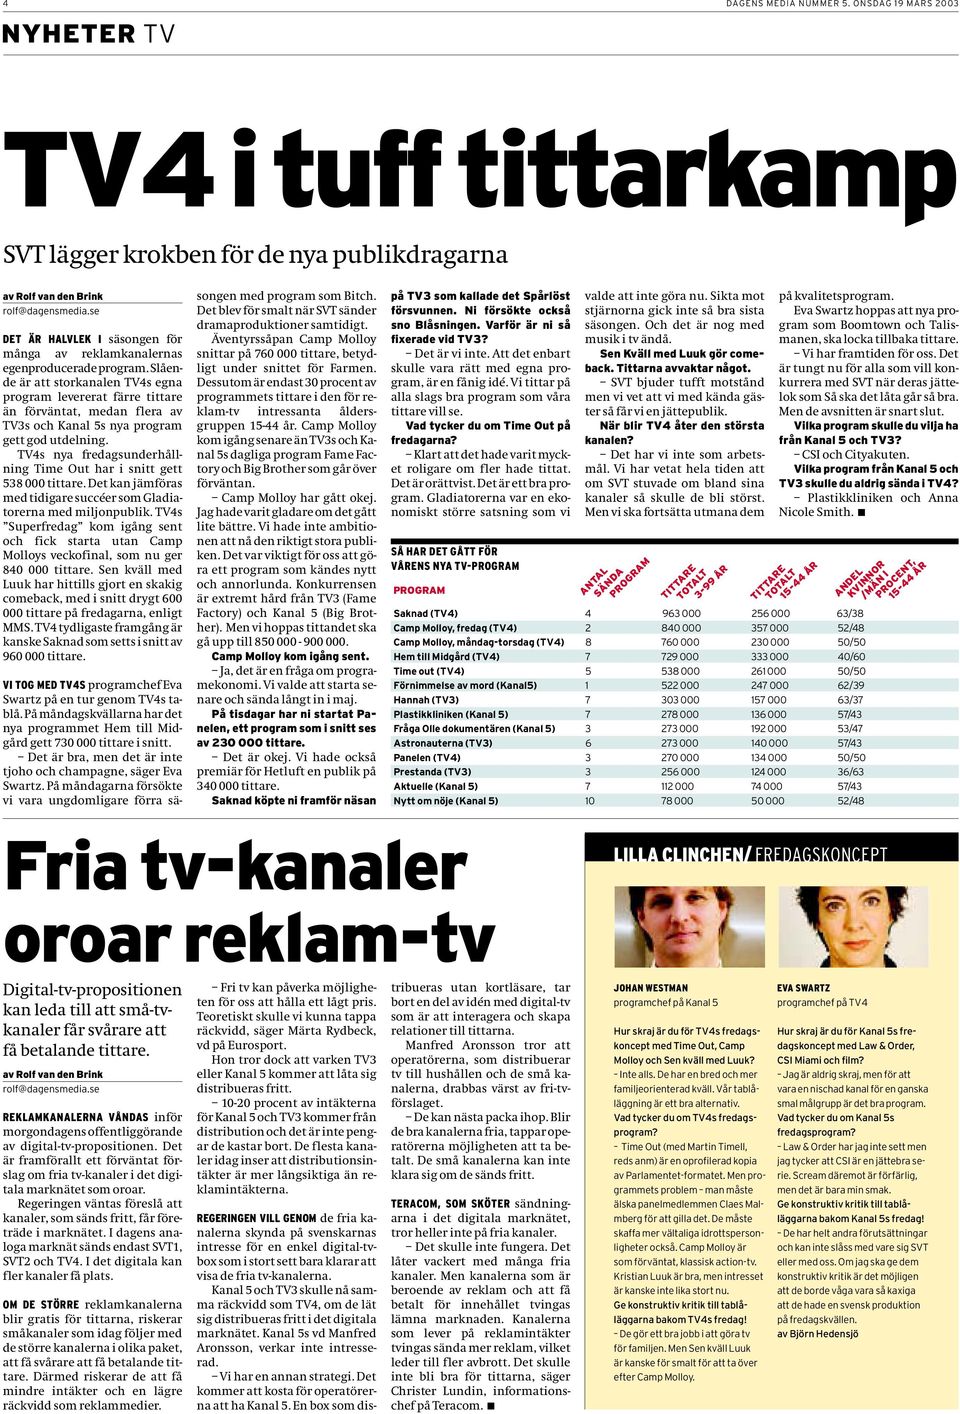 Slående är att storkanalen TV4s egna program levererat färre tittare än förväntat, medan flera av TV3s och Kanal 5s nya program gett god utdelning.